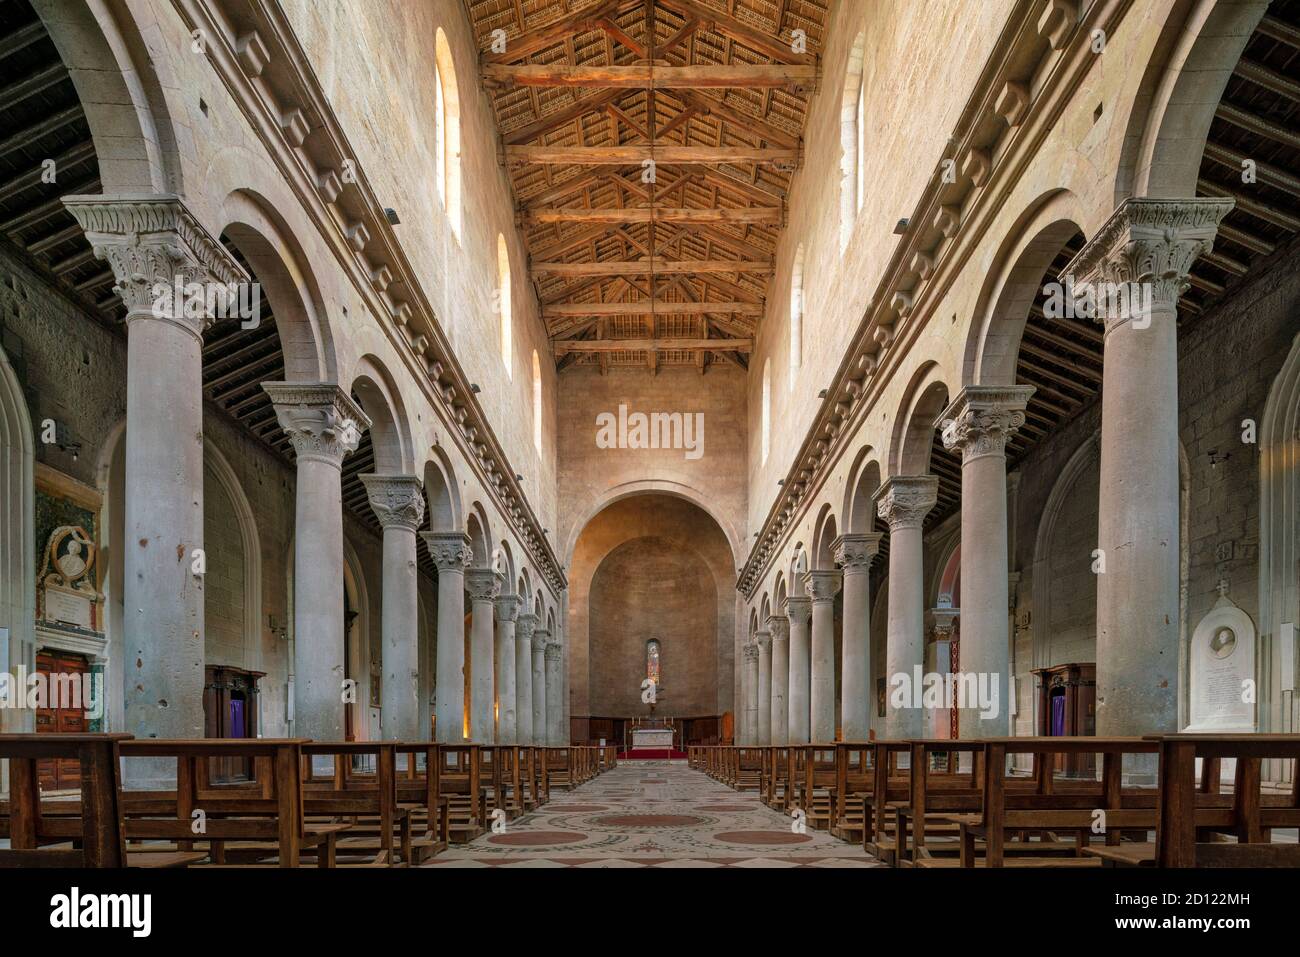 Duomo von Viterbo, Italien. 12. Jahrhundert romanischen Innenraum der Kathedrale von San Lorenzo, Viterbo, Latium, Italien. Stockfoto